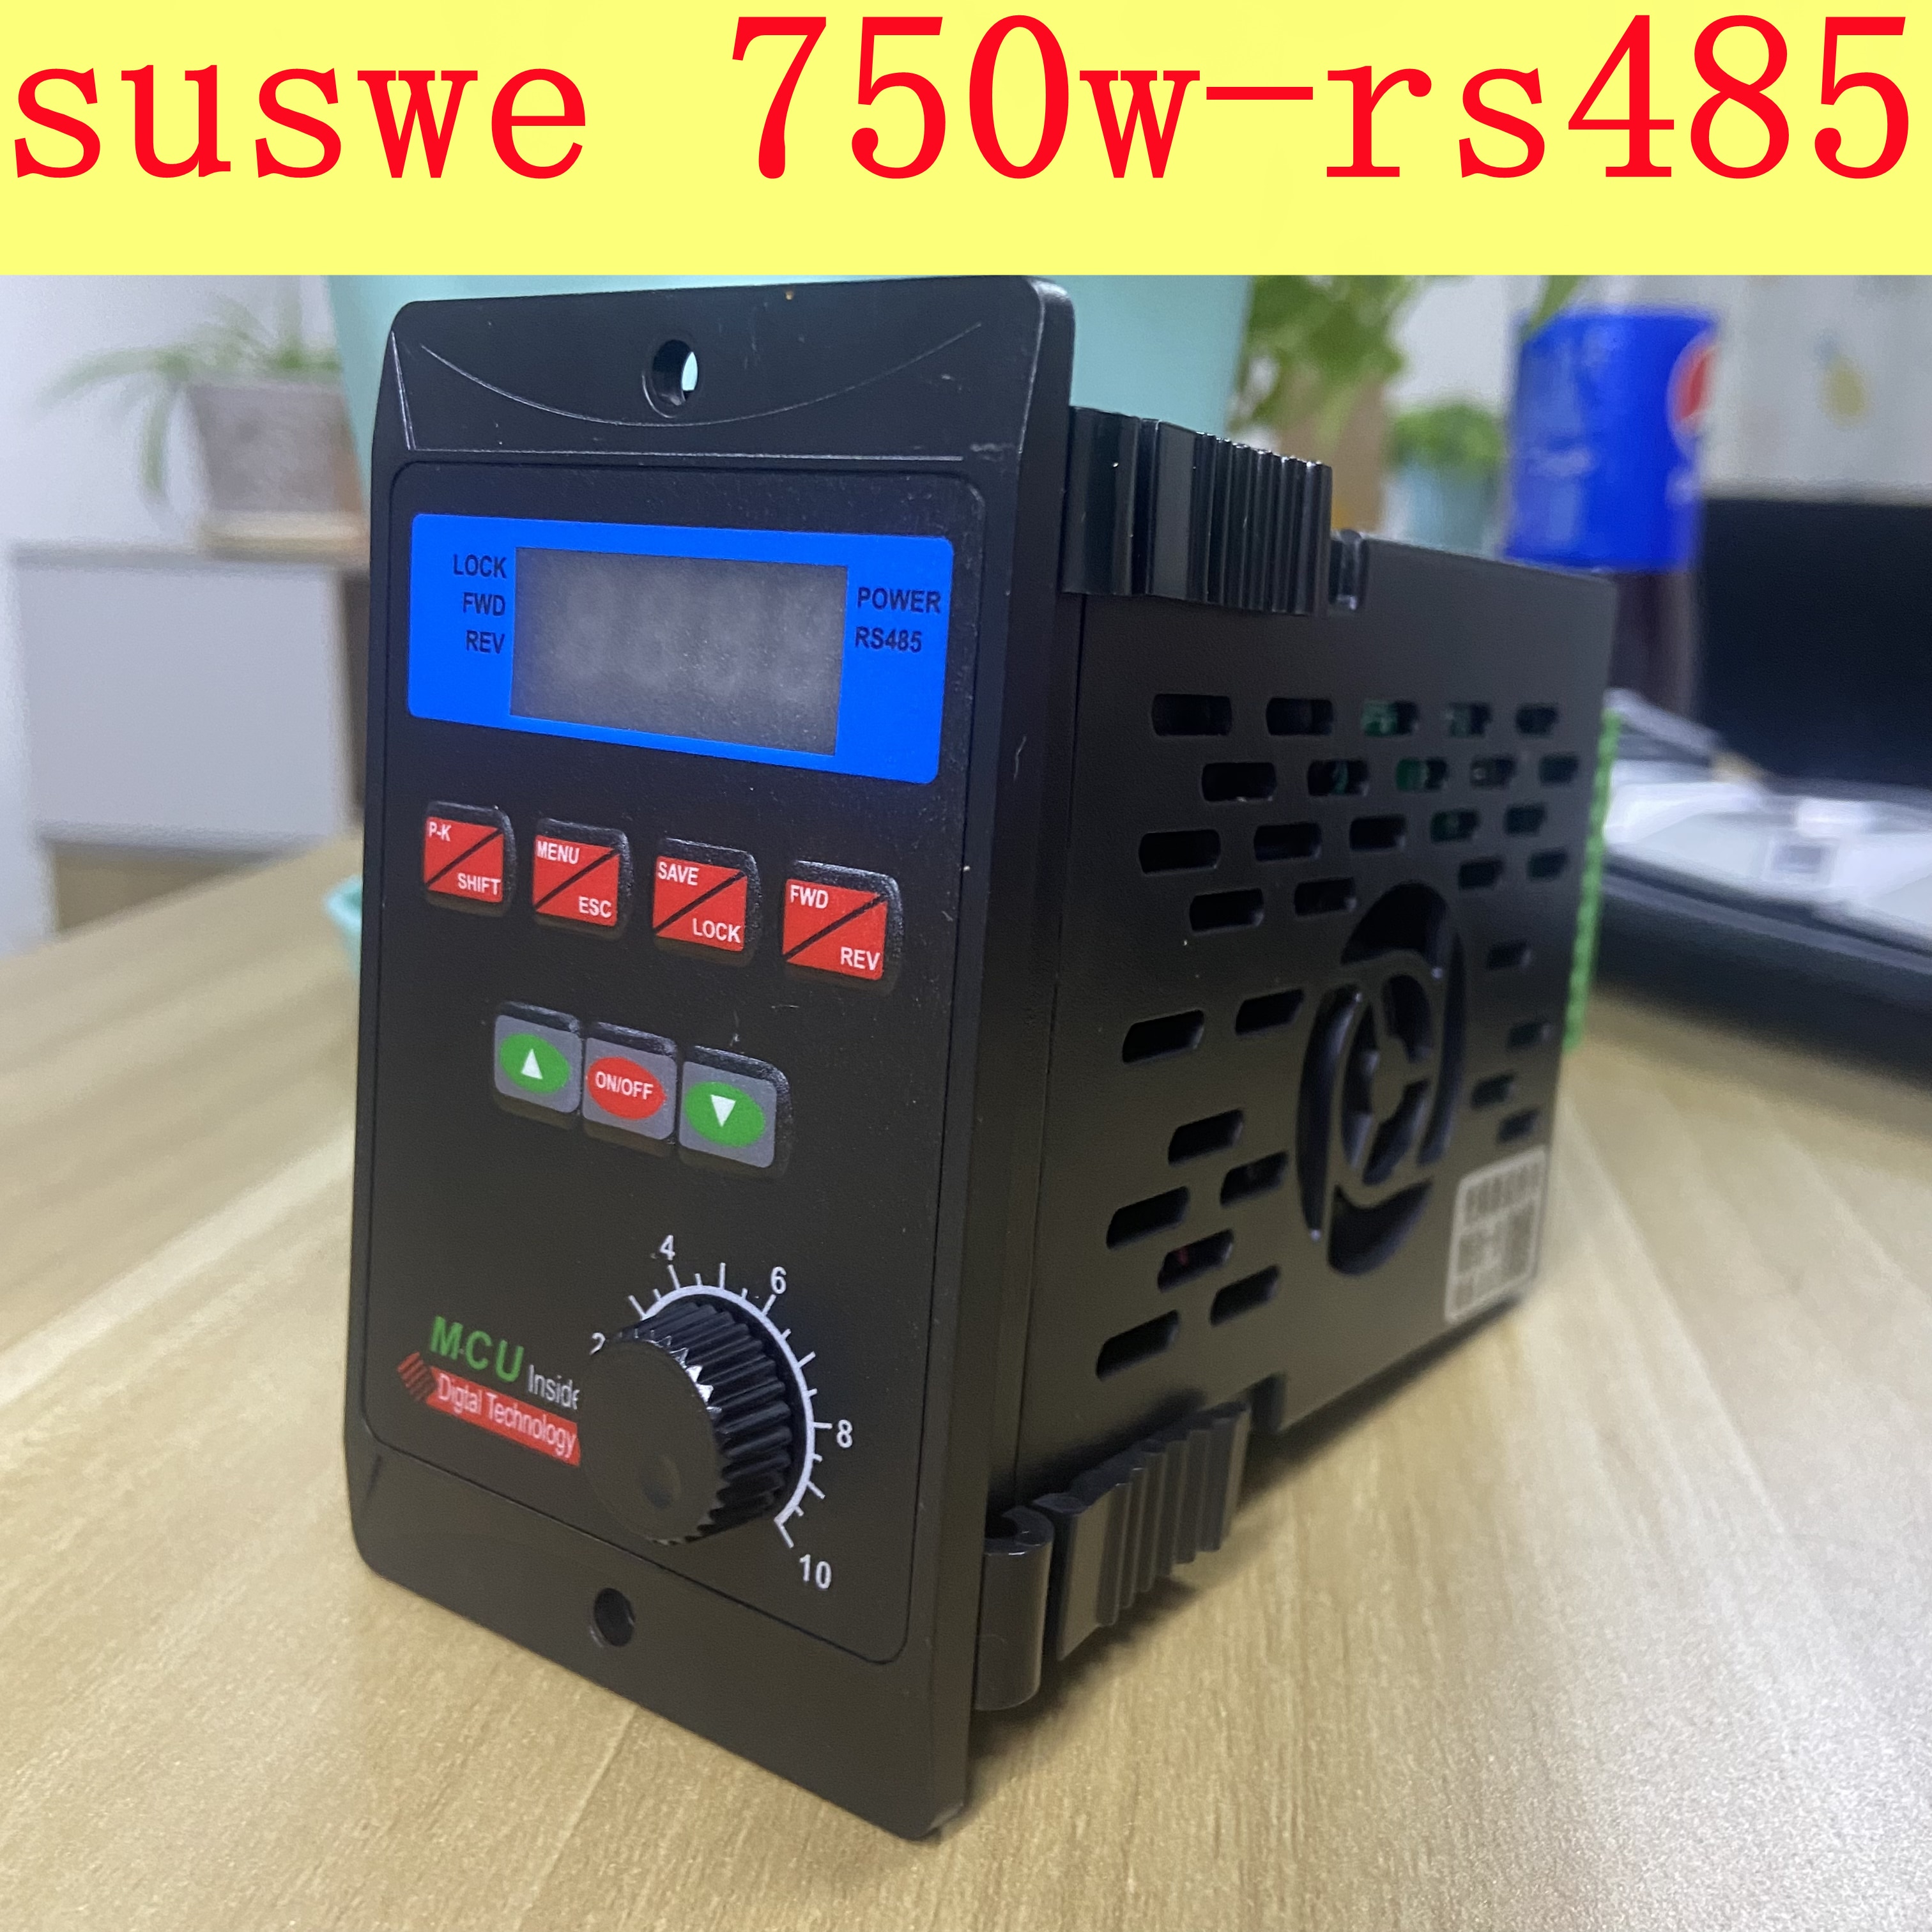 Suswe 810 vfd 750w frekvensomformer add  rs485 220 vsingle phase inp trefaset motordriver enkeltfaset input 0.75kw